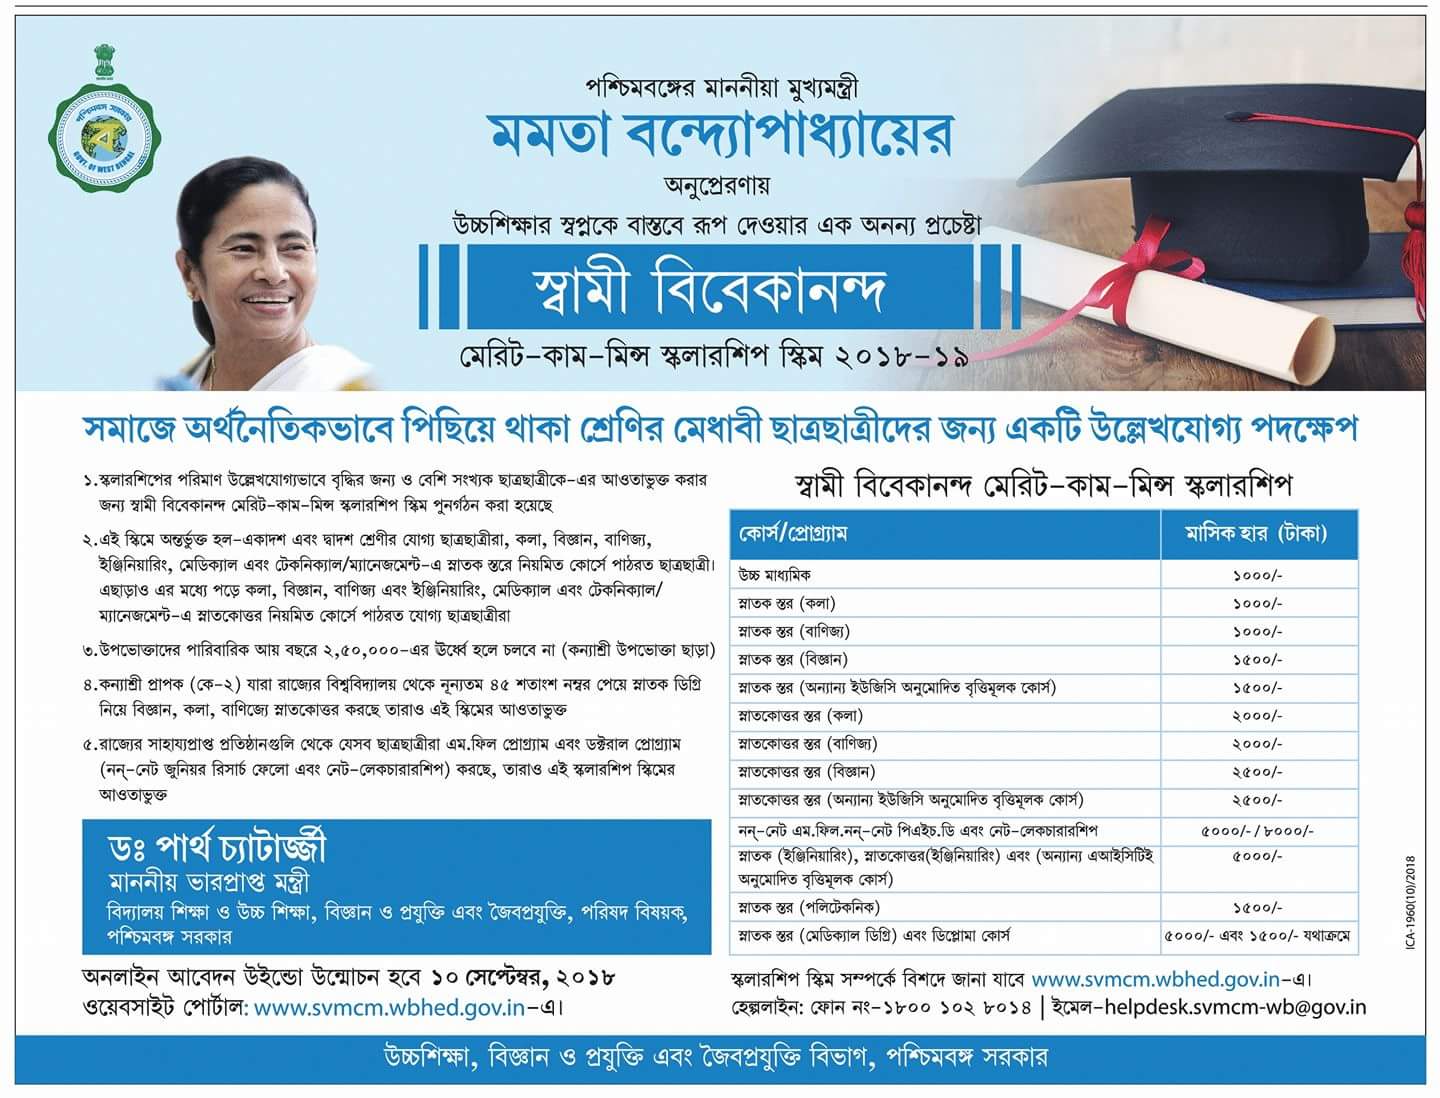 Bikash Bhavan Scholarship